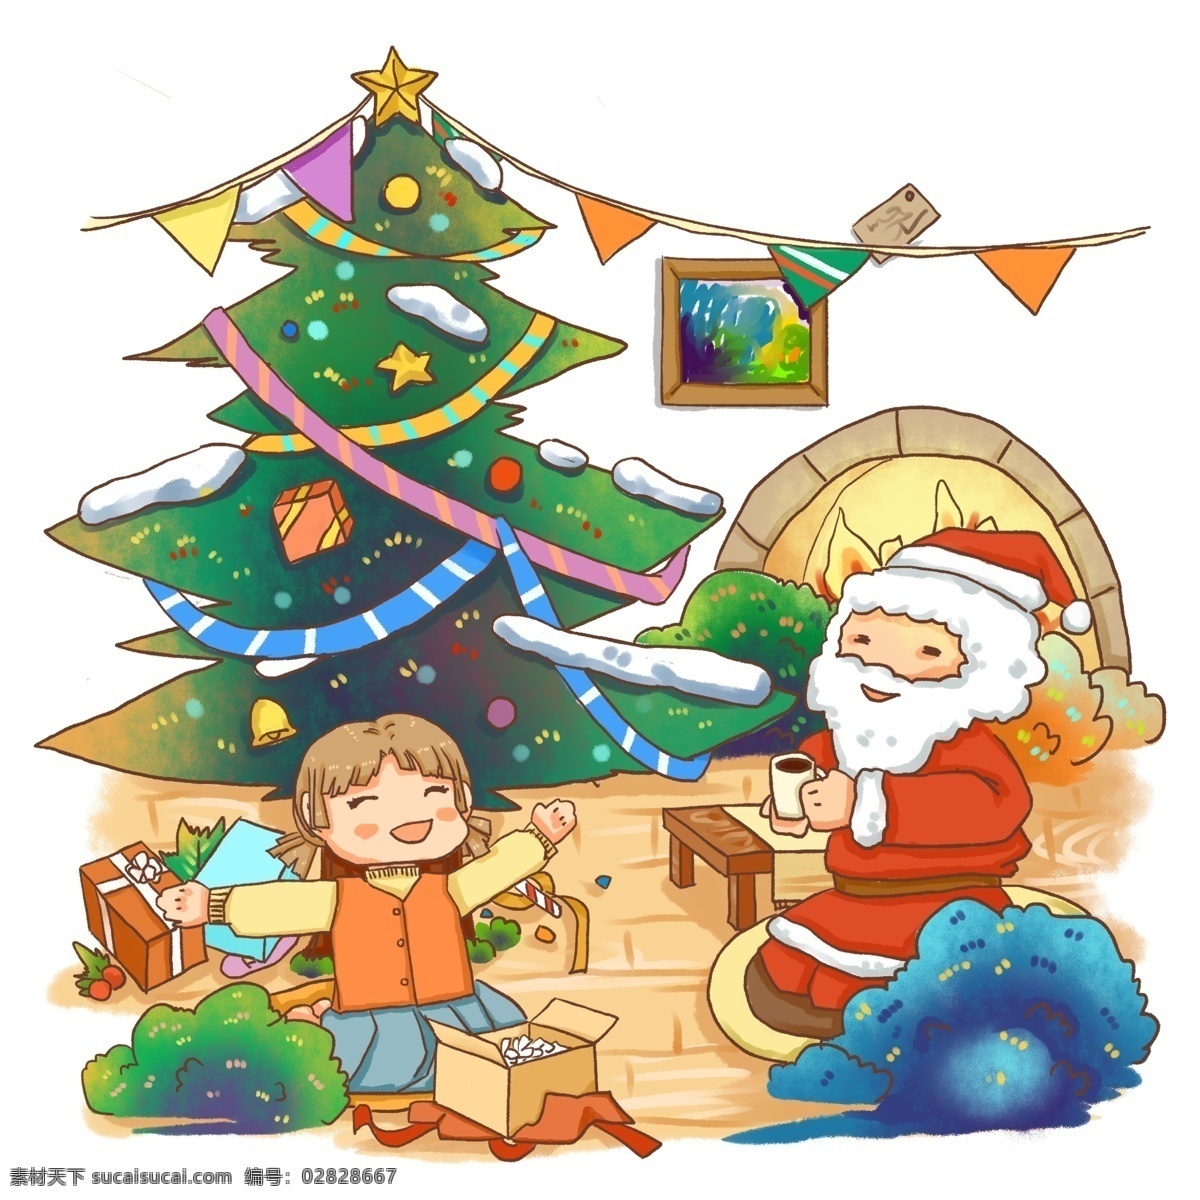 圣诞节 商业 元素 圣诞老人 场景 开 礼物 壁炉 圣诞树 圣诞礼物 礼物盒 开礼物 圣诞习俗